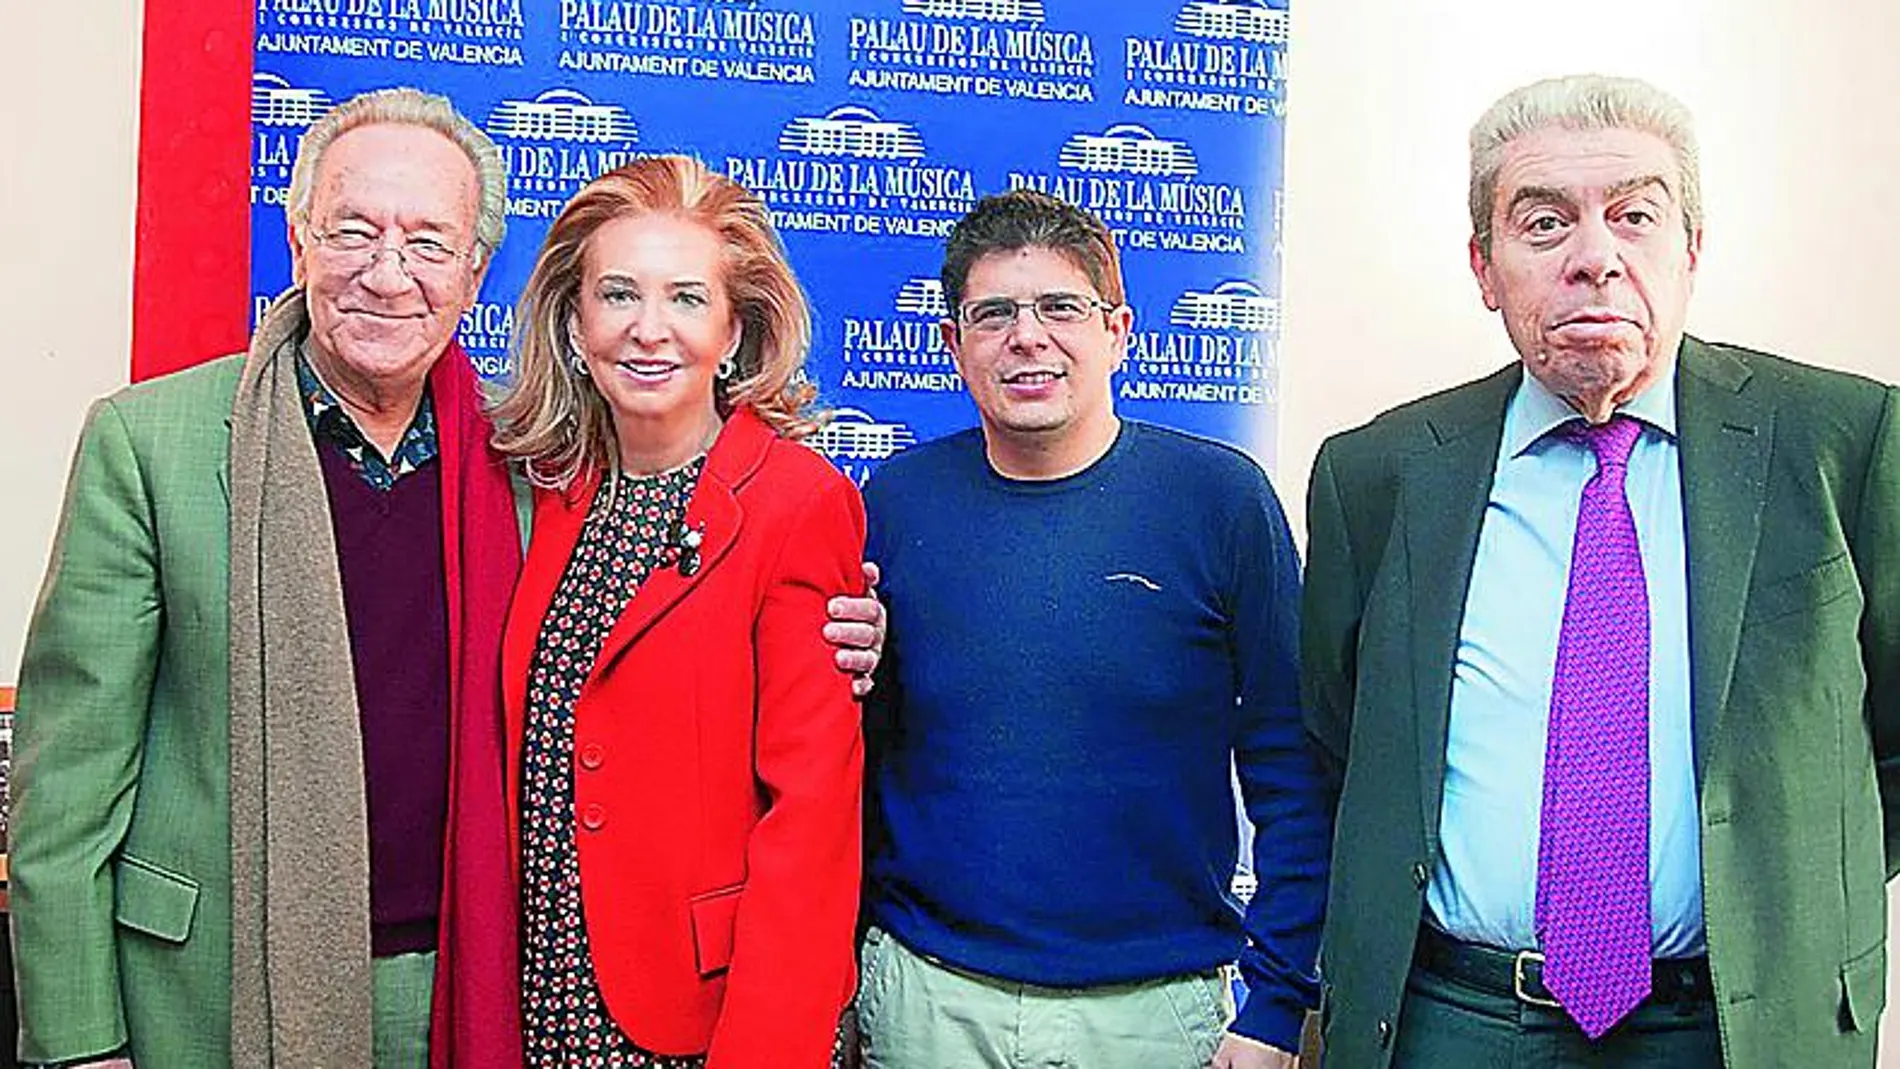 Yuri Temirkanov, Mayrén Beneyto, Javier Perianes y Ramón Almazán presentaron el único concierto del maestro en Valencia